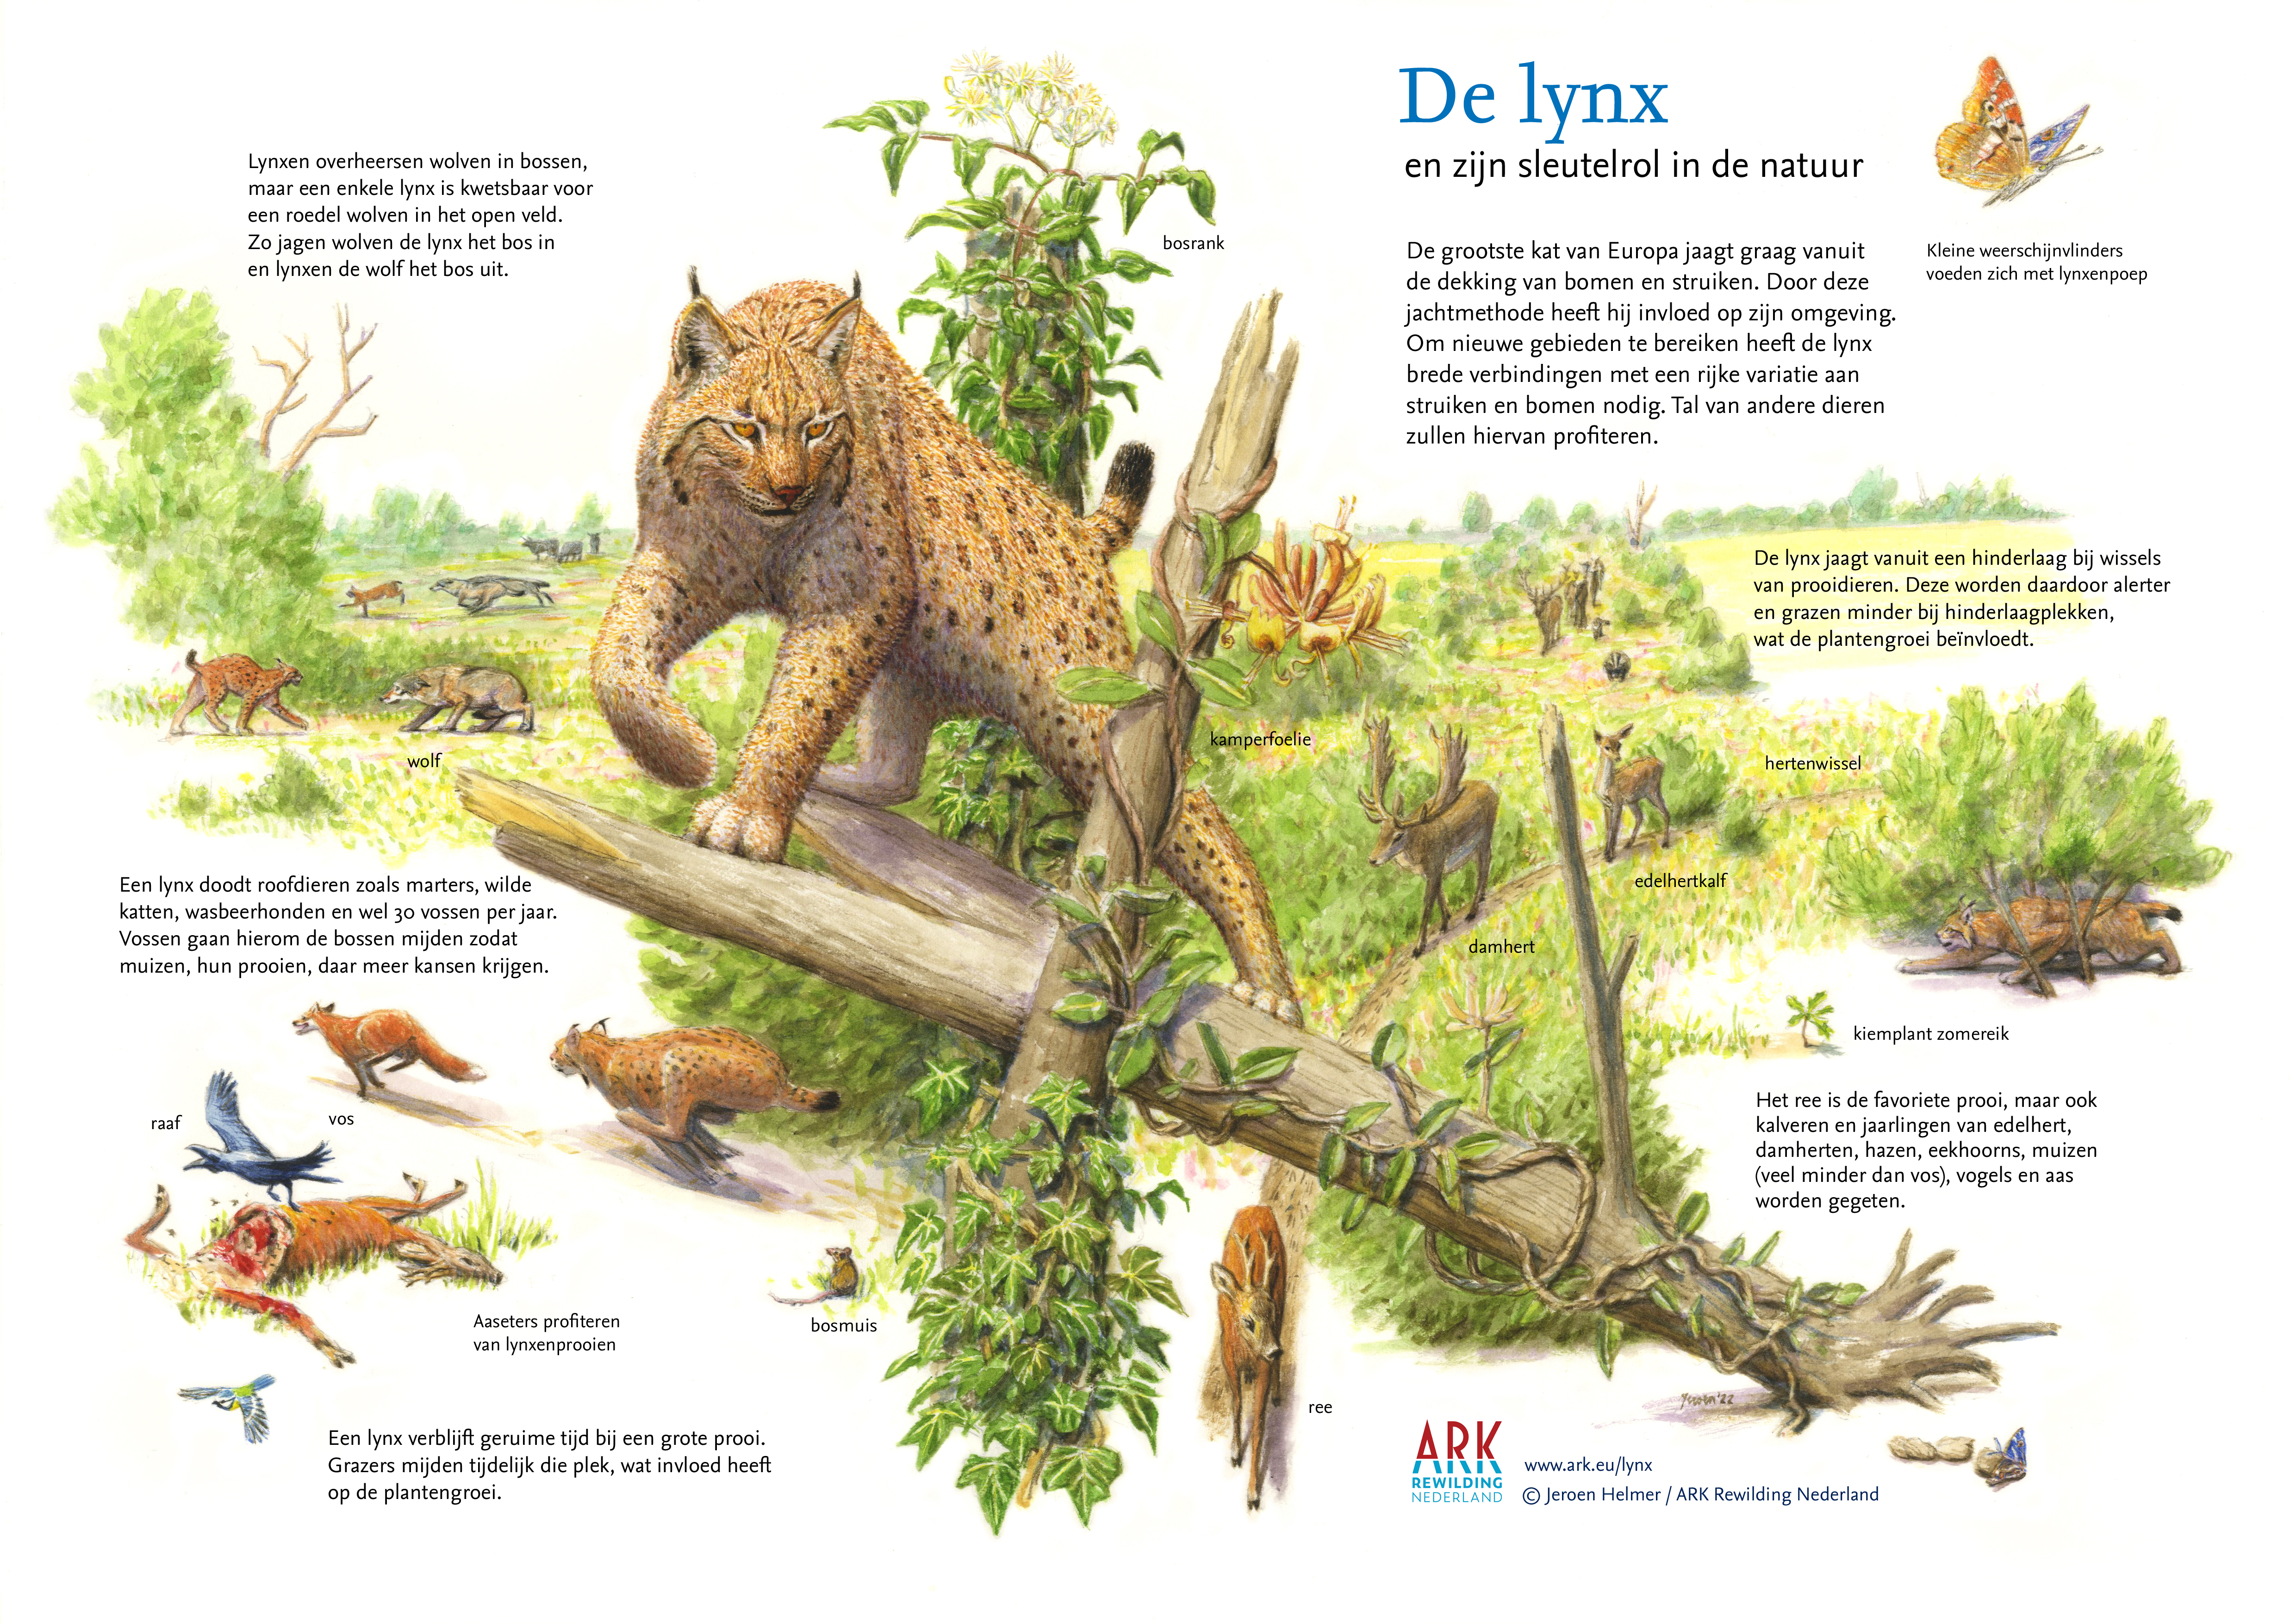 Sleutelsoort lynx. © Jeroen Helmer